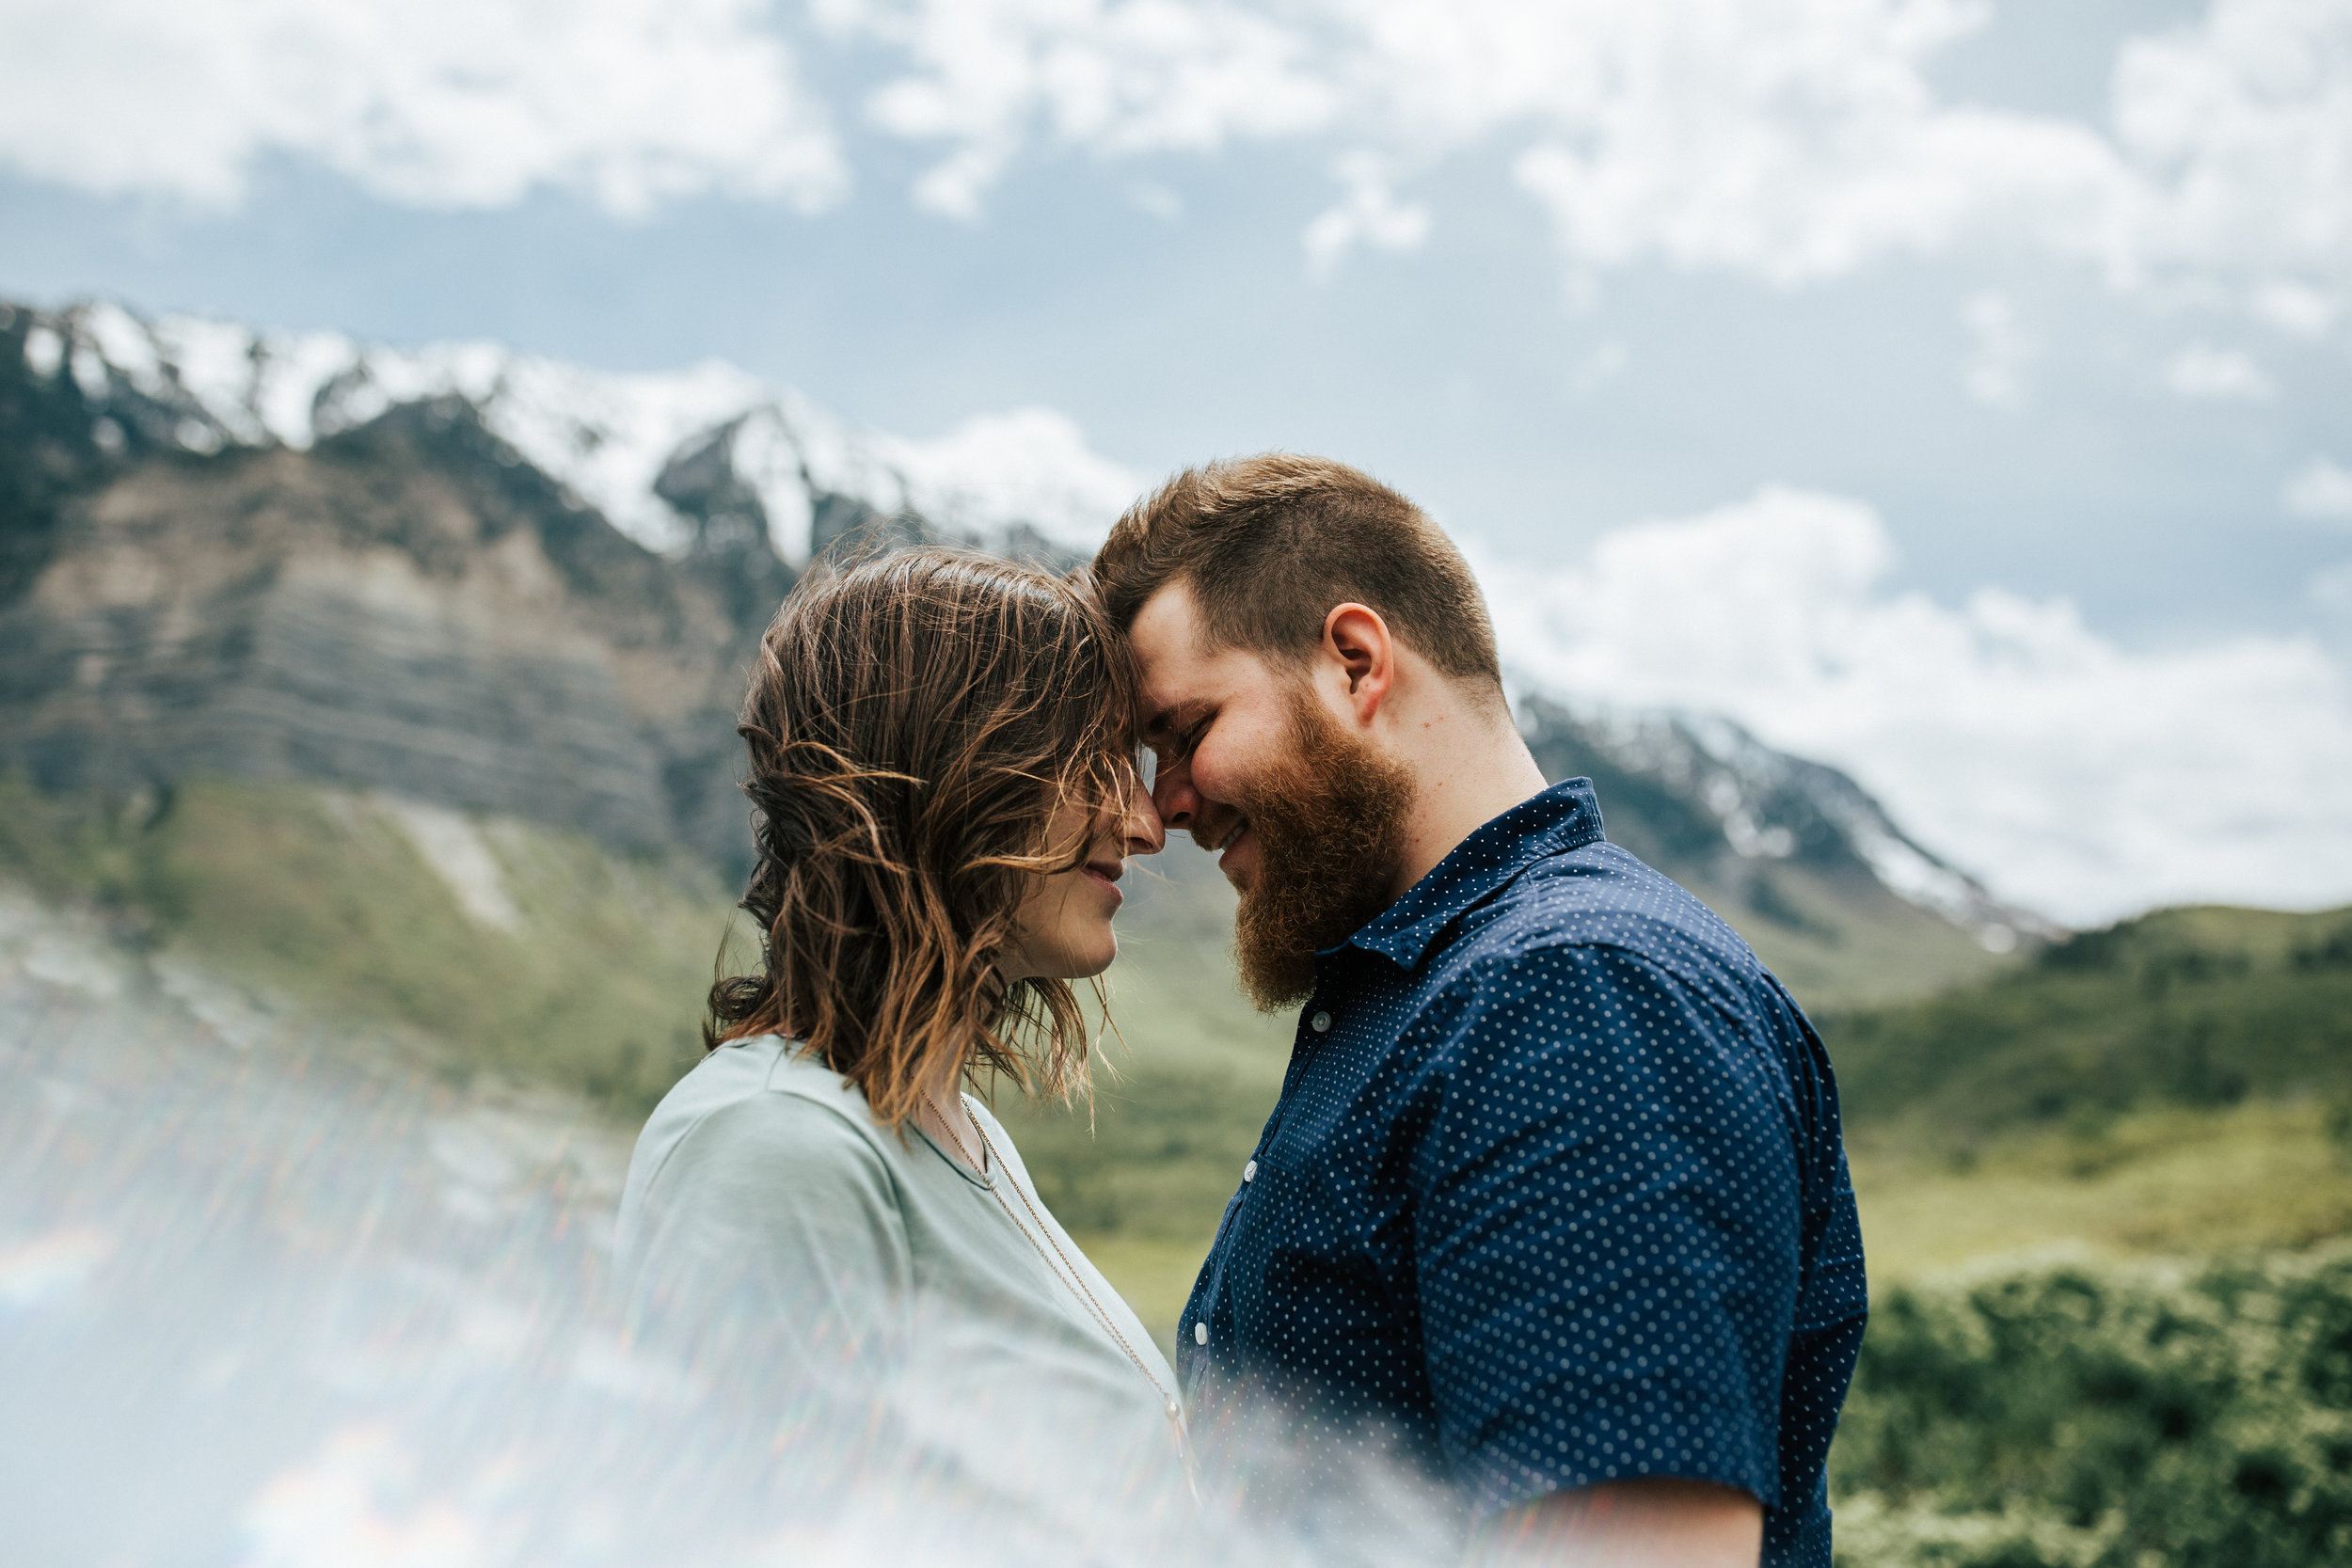 Adventurous mountain couple shoot in Utah windflower field